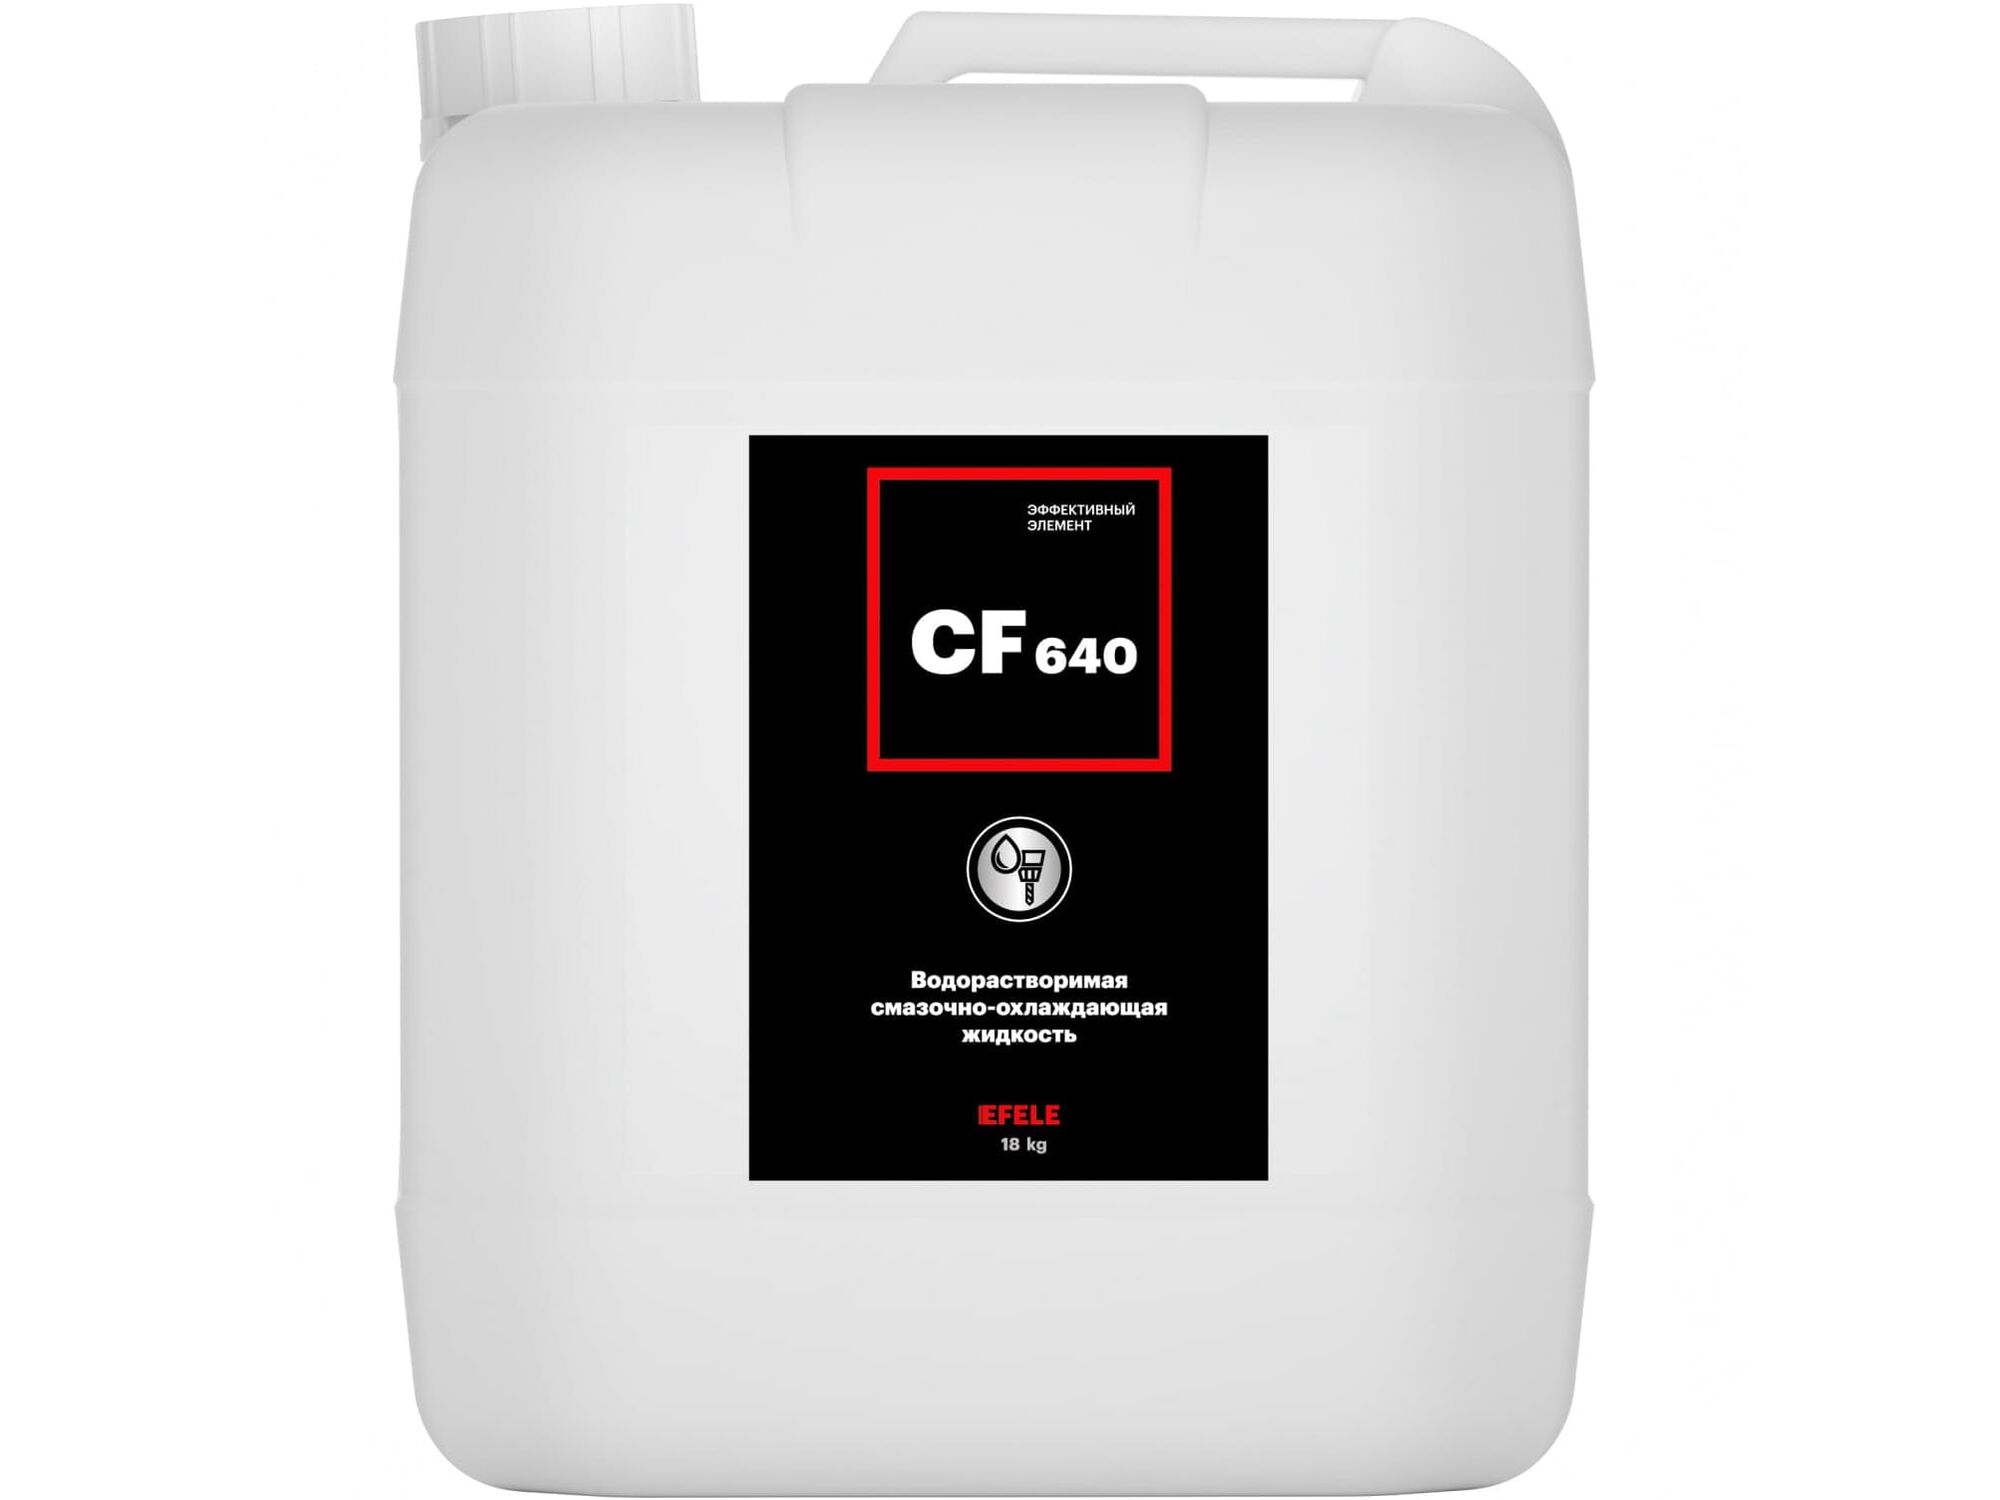 Смазочно-охлаждающая жидкость Efele CF-640, 18кг